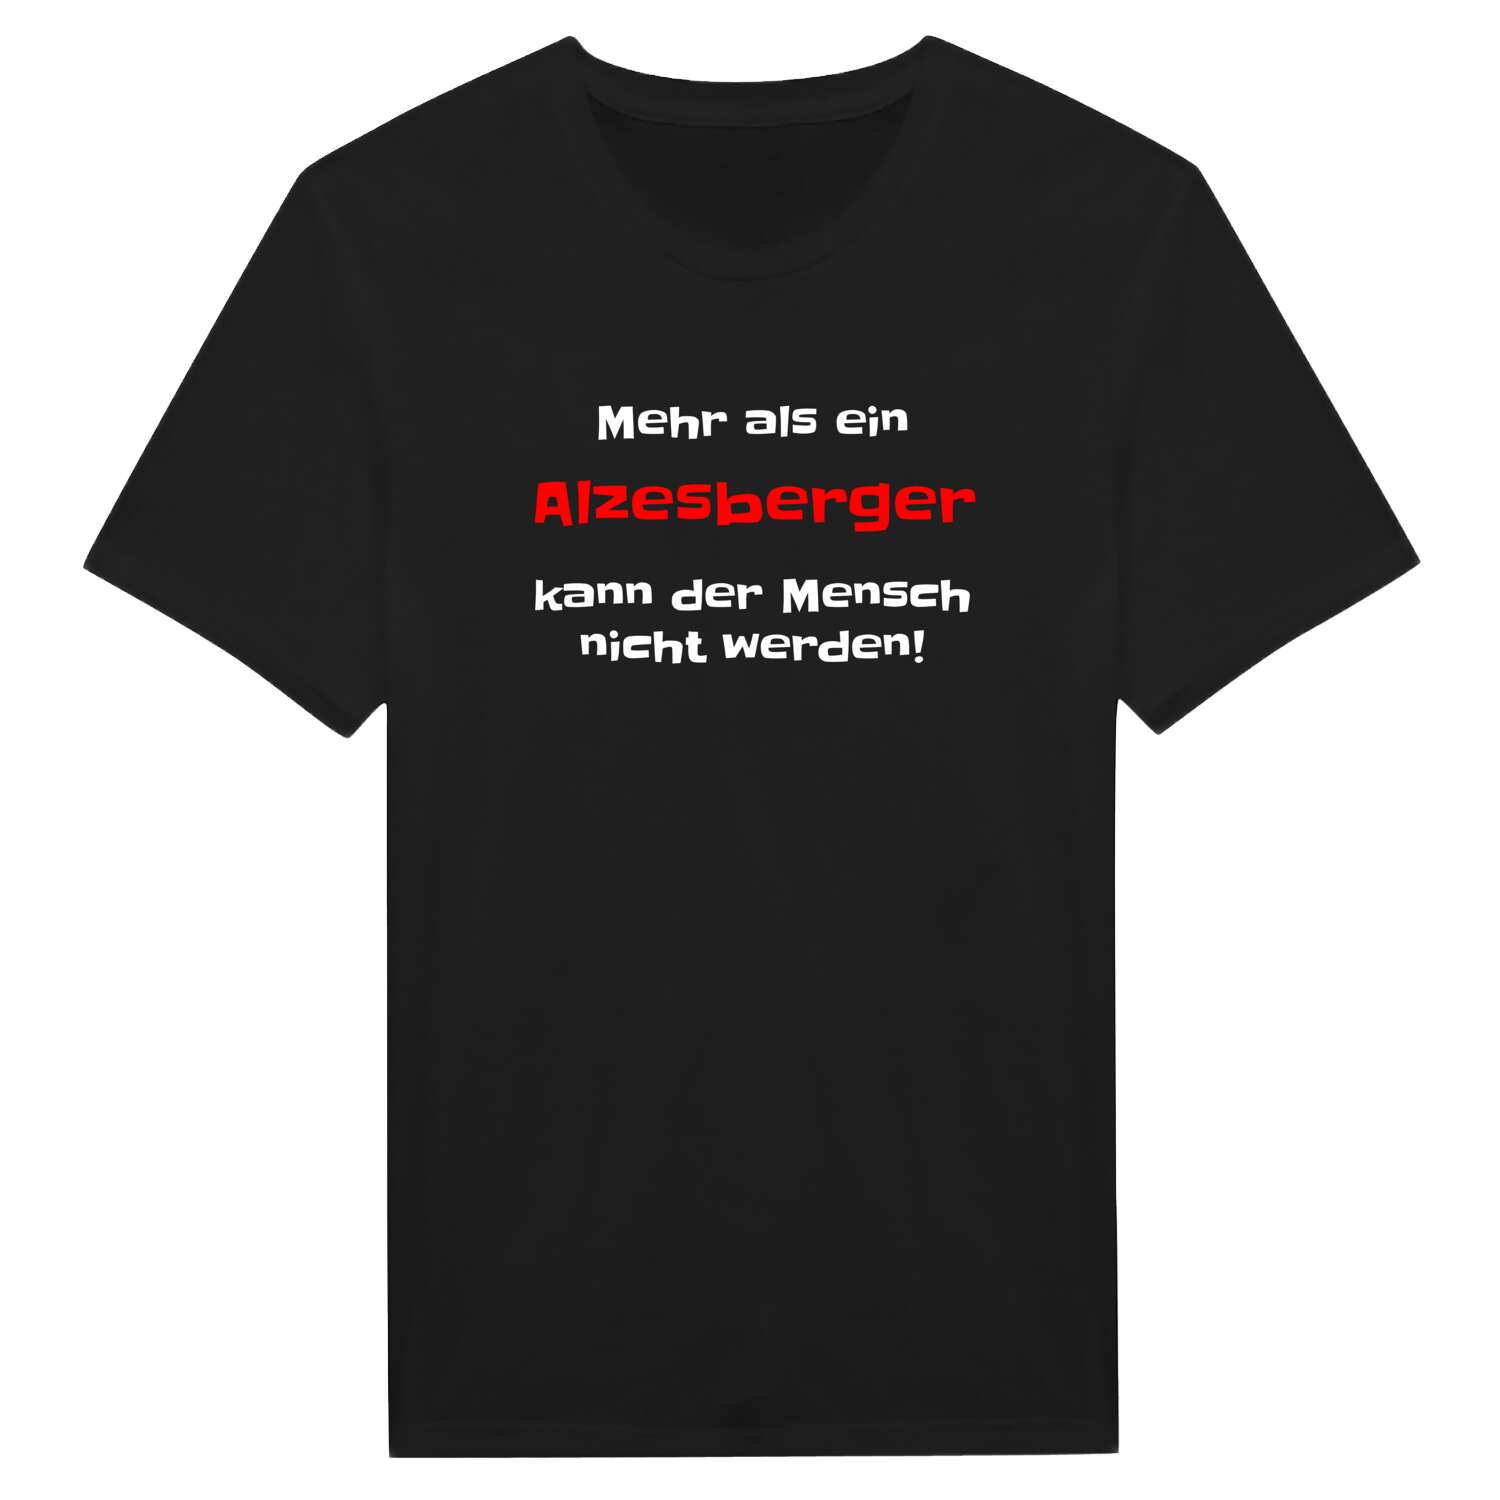 Alzesberg T-Shirt »Mehr als ein«